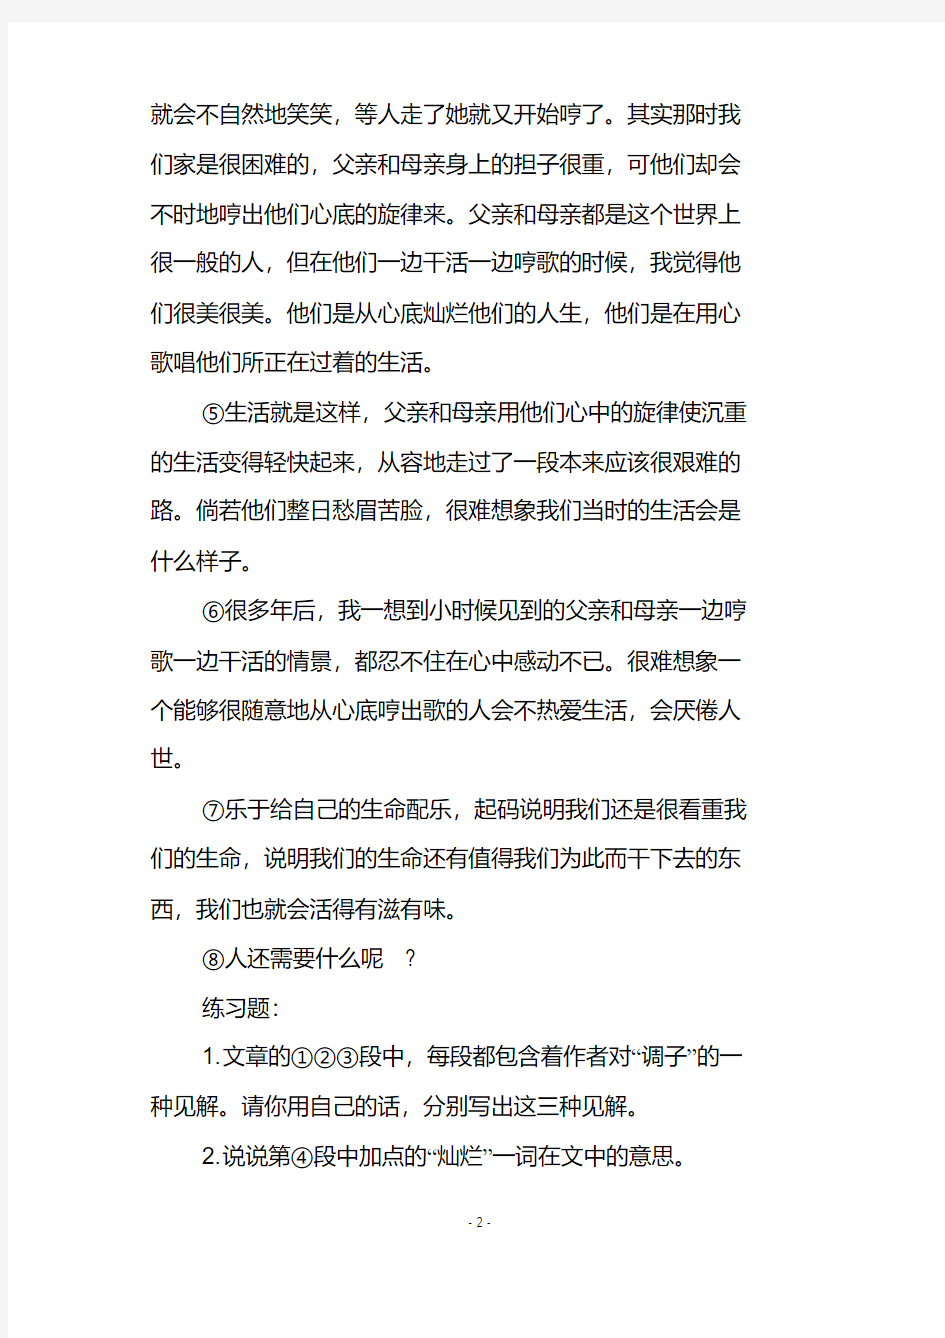 初中语文中考记叙文阅读表达方式、表现手法答题指导